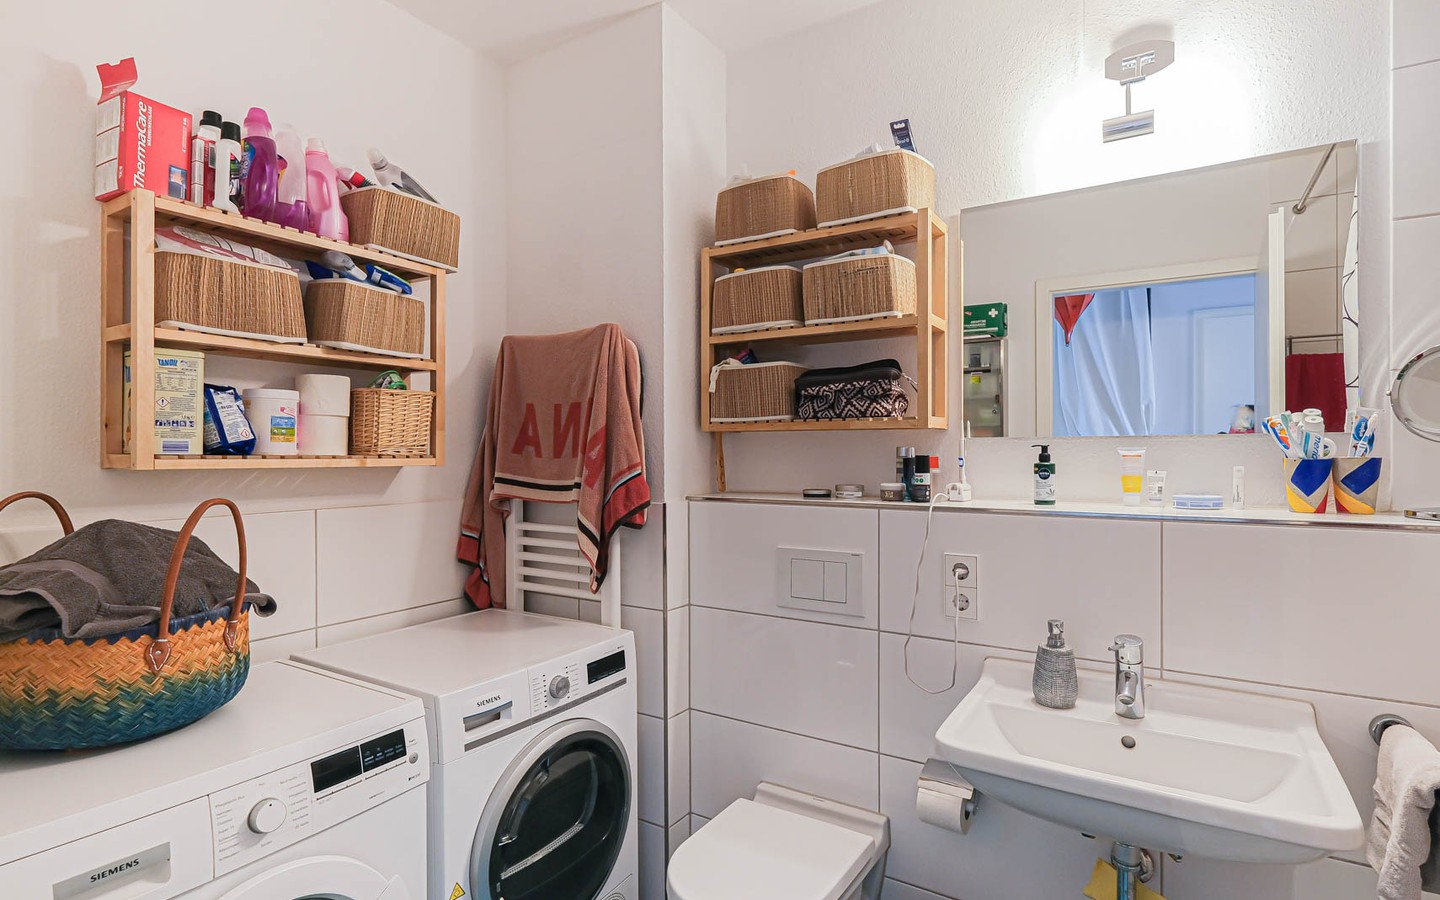 Badezimmer - Familien aufgepasst: Vierzimmerwohnung sucht neue Mieter